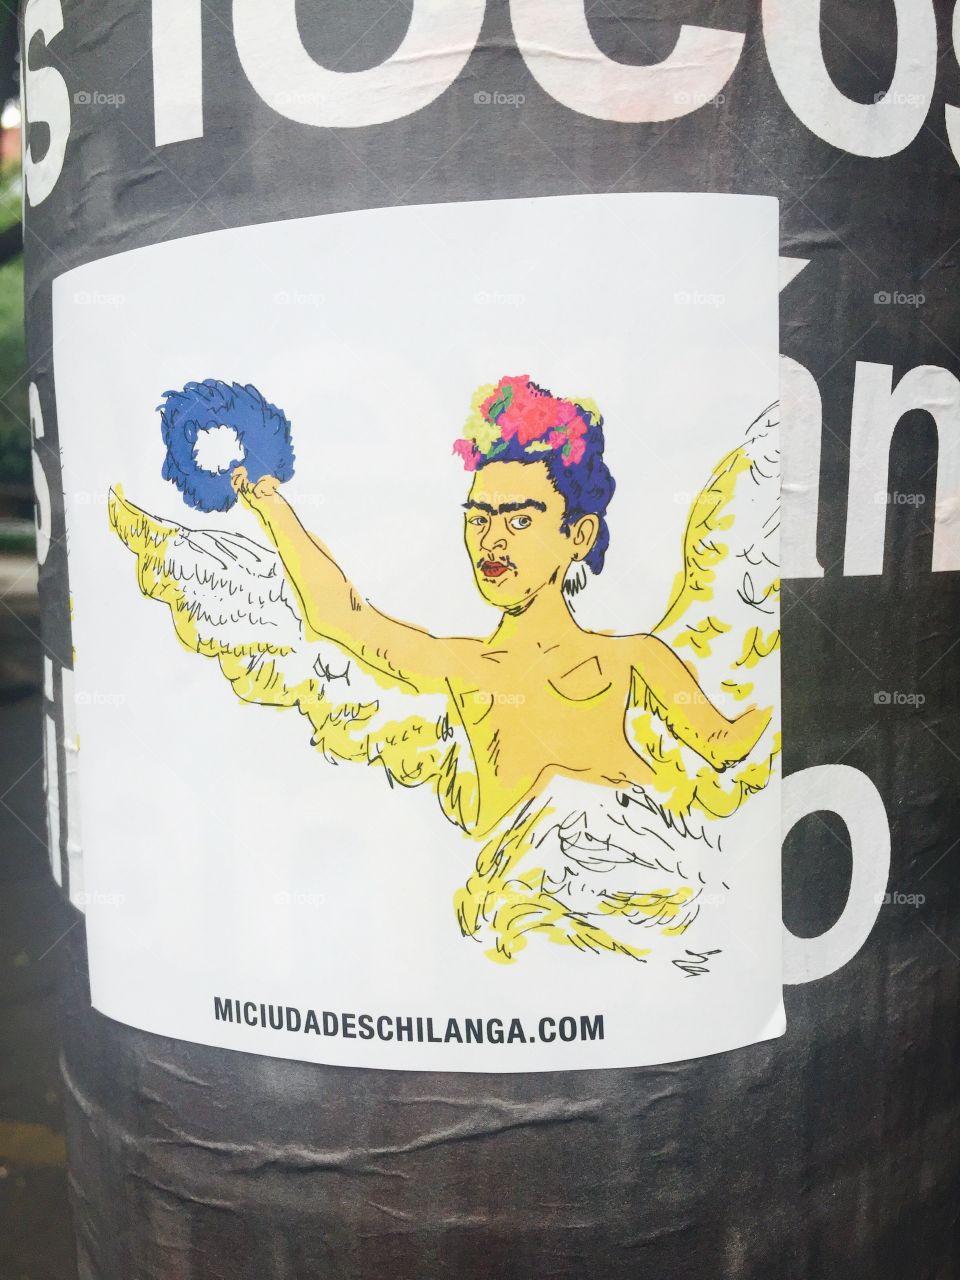 Frida Kalho sticker